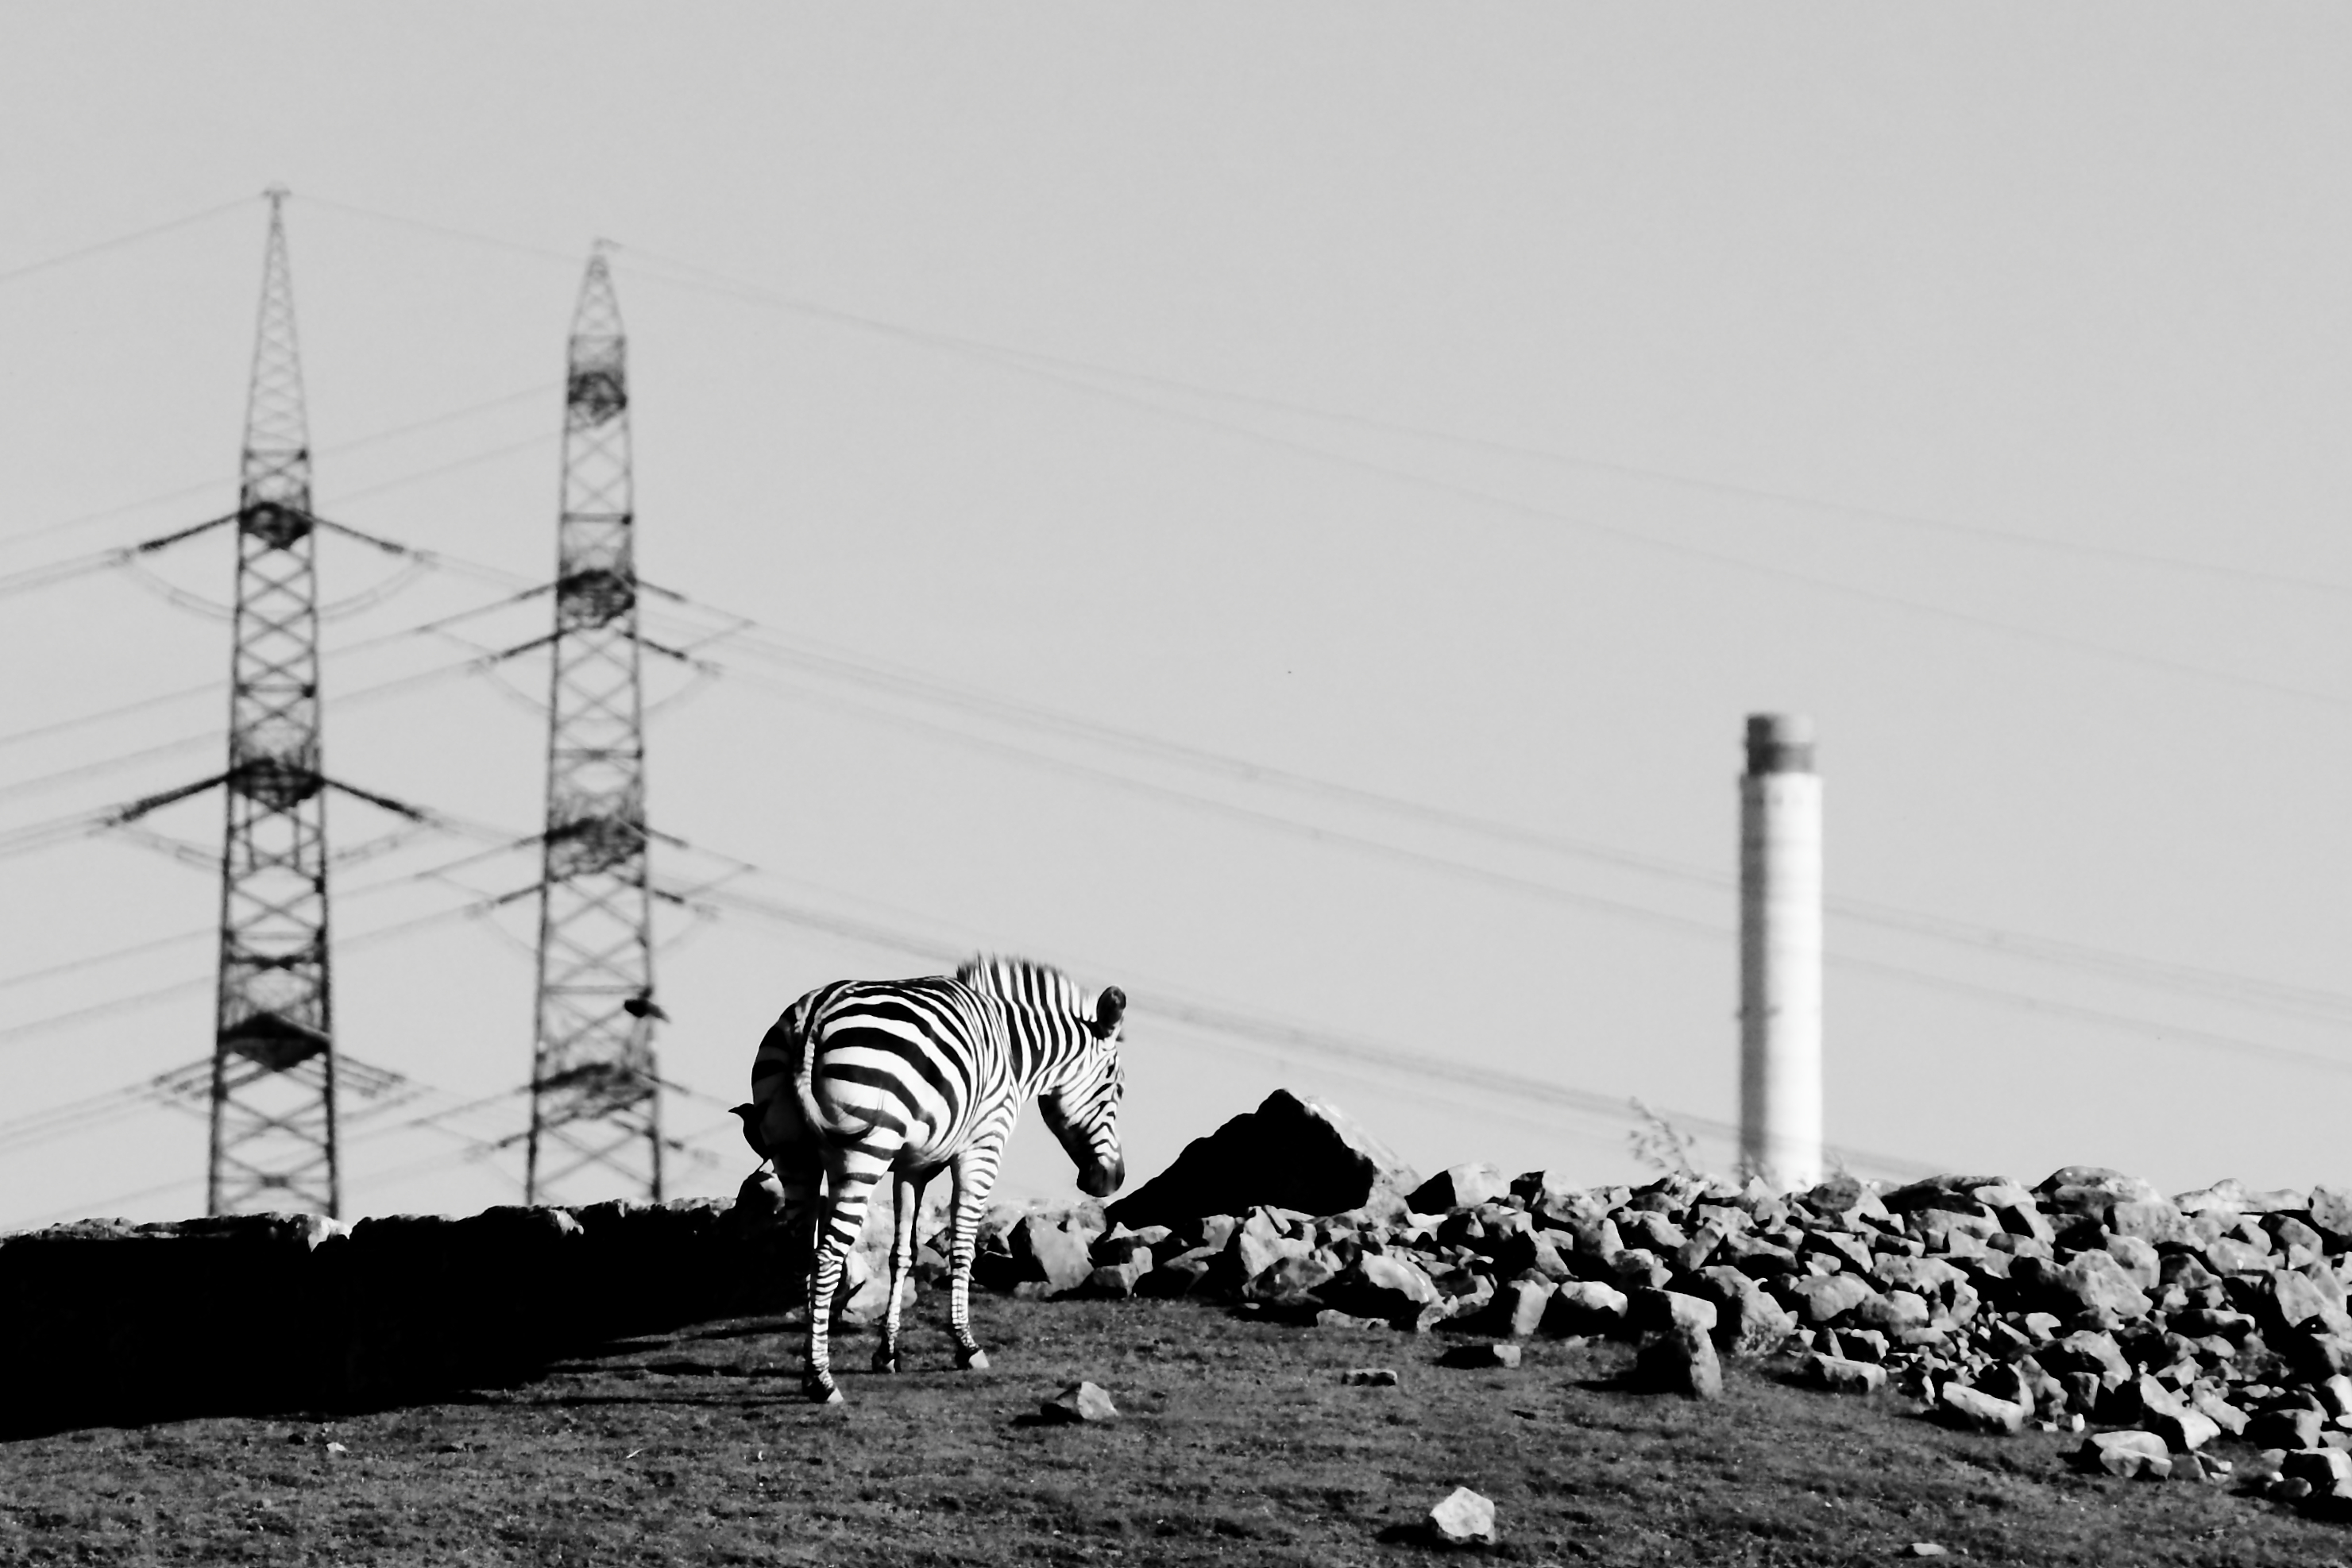 Industrial Zebra